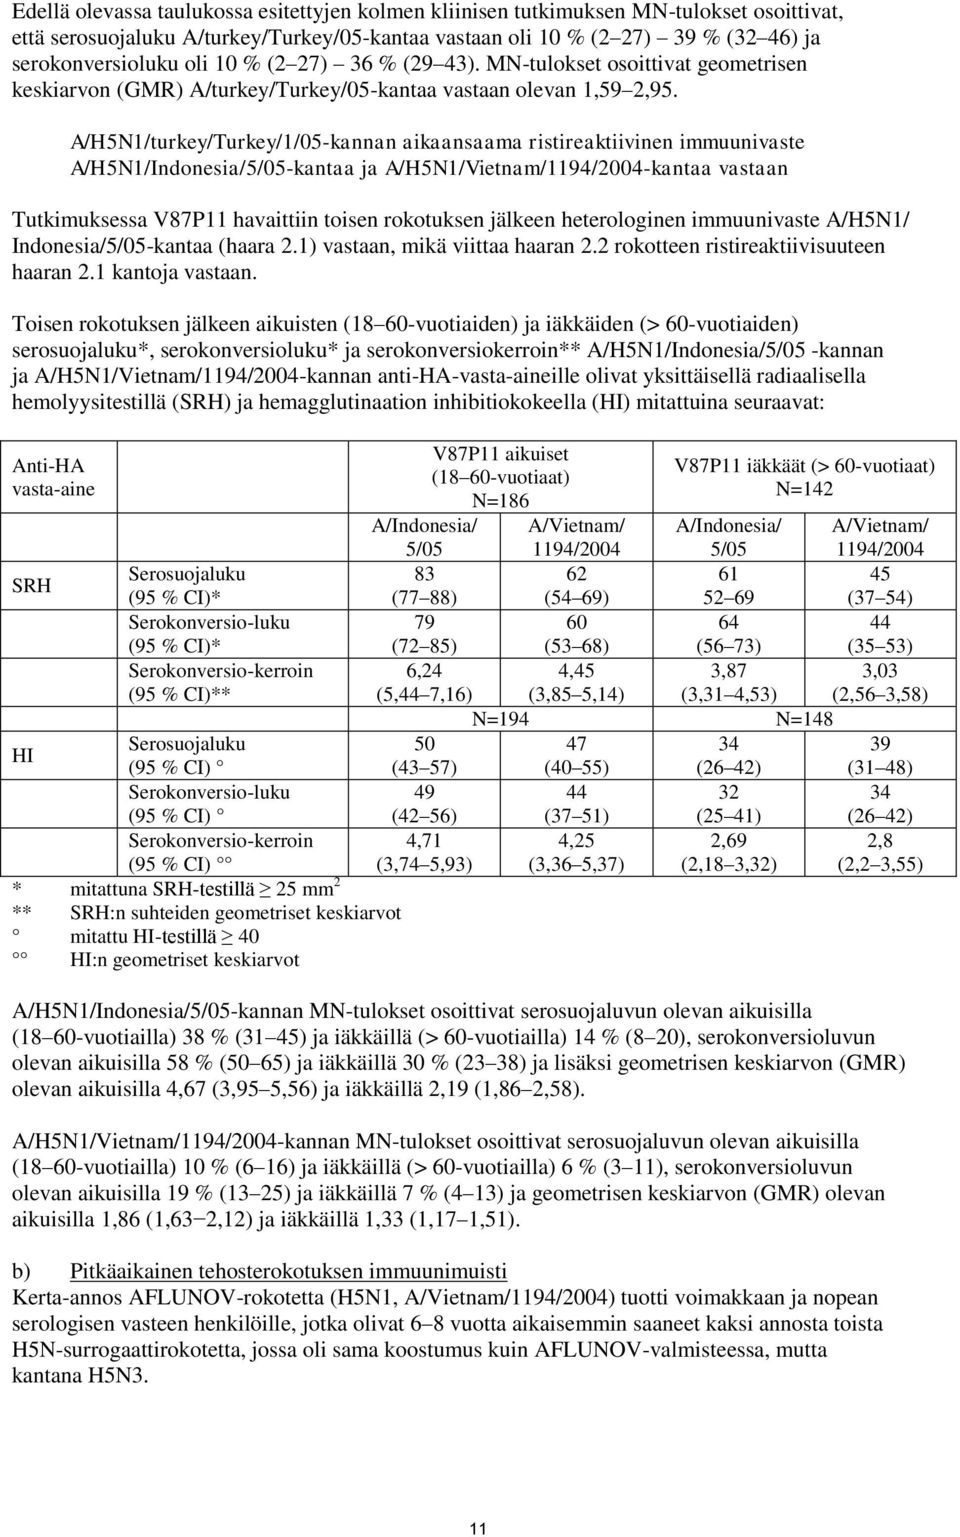 A/H5N1/turkey/Turkey/1/05-kannan aikaansaama ristireaktiivinen immuunivaste A/H5N1/Indonesia/5/05-kantaa ja A/H5N1/Vietnam/1194/2004-kantaa vastaan Tutkimuksessa V87P11 havaittiin toisen rokotuksen